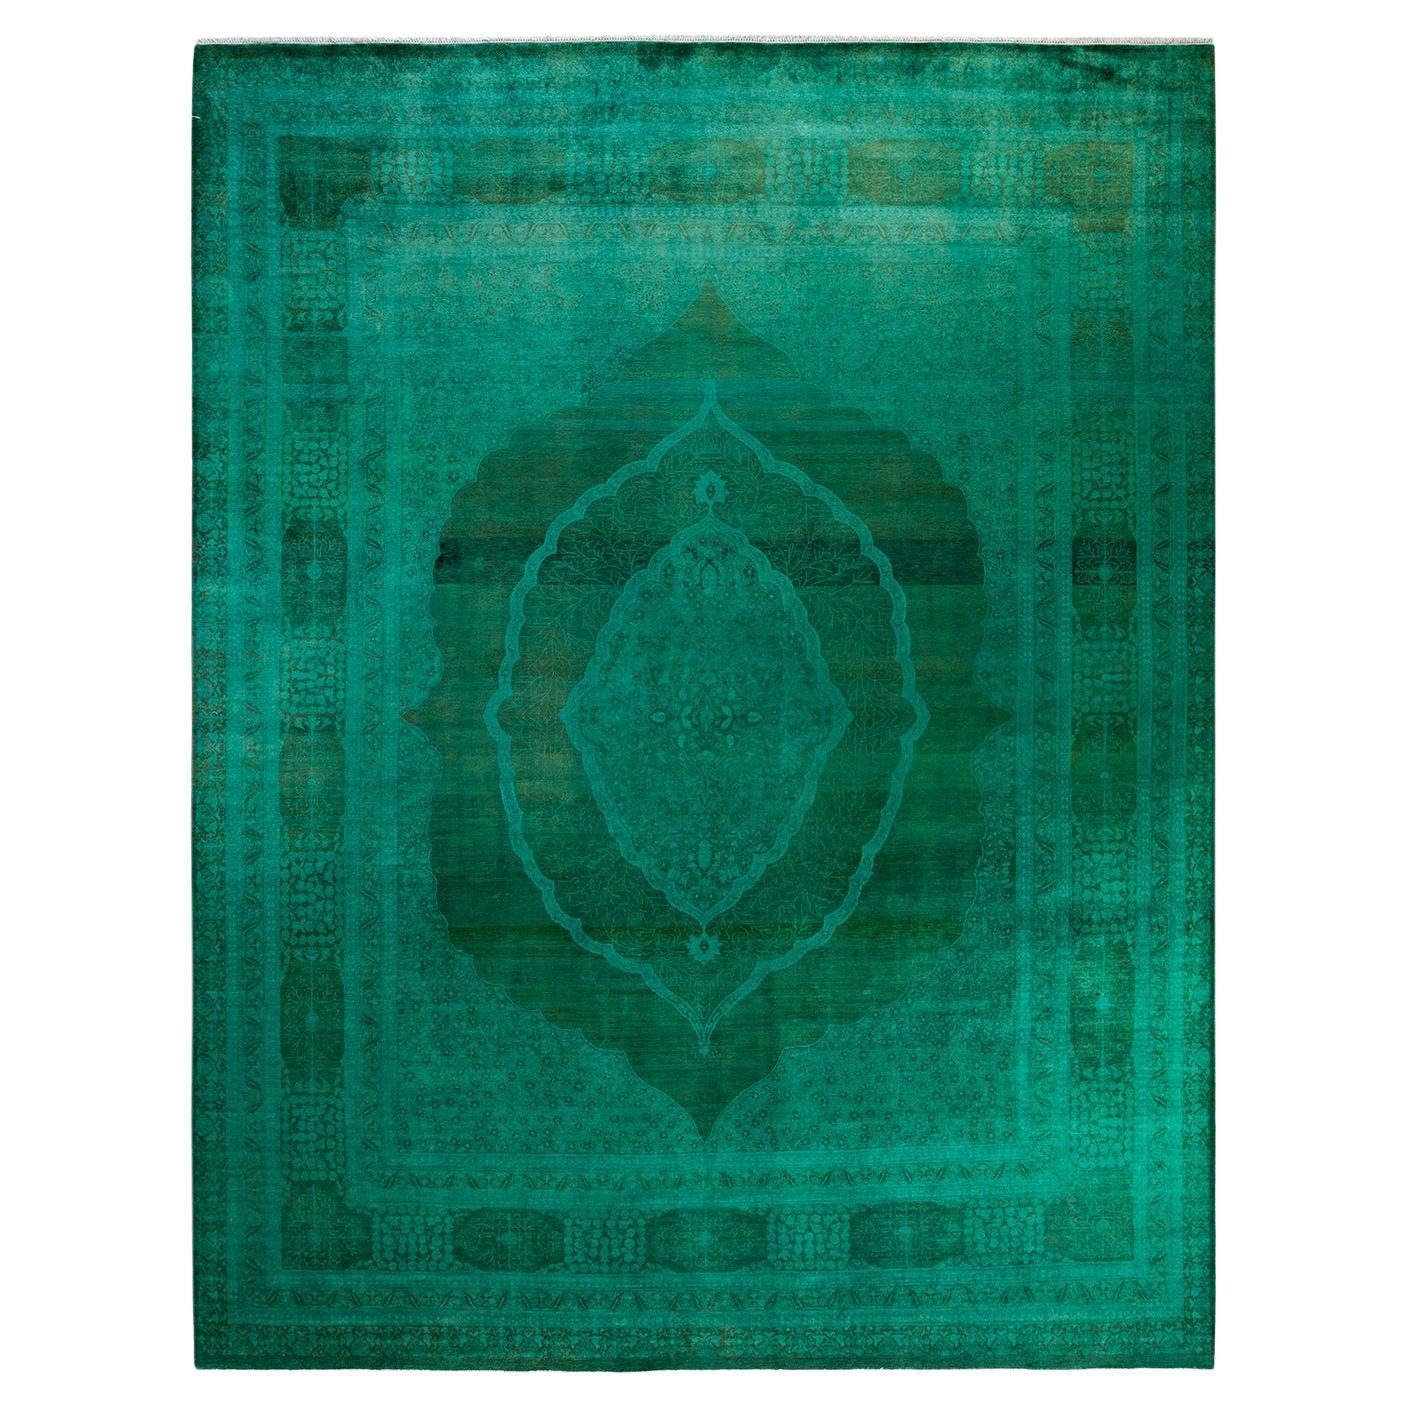 Grüner Teppich aus handgeknüpfter Wolle, gefärbt